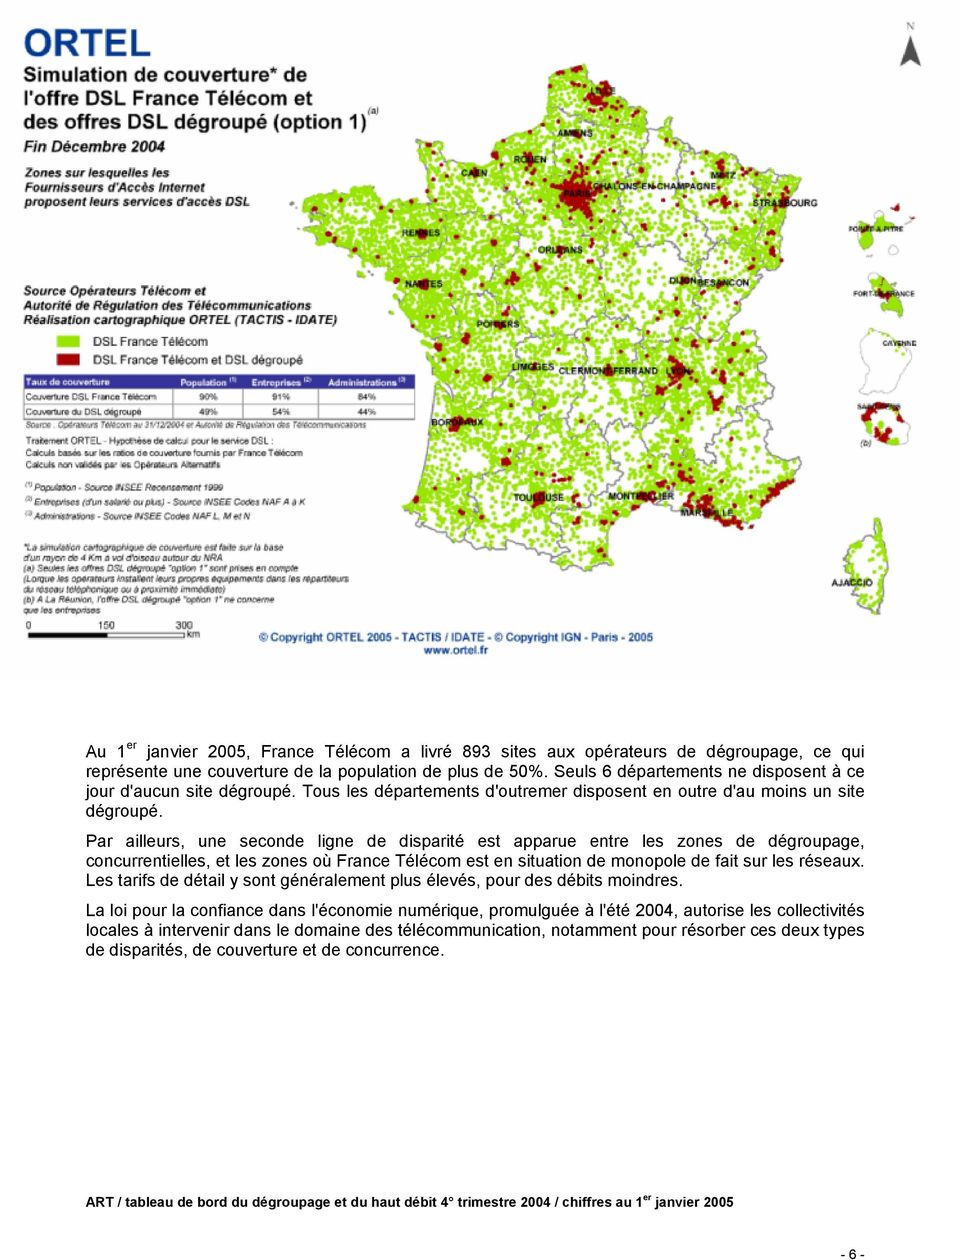 Par ailleurs, une seconde ligne de disparité est apparue entre les zones de dégroupage, concurrentielles, et les zones où France Télécom est en situation de monopole de fait sur les réseaux.